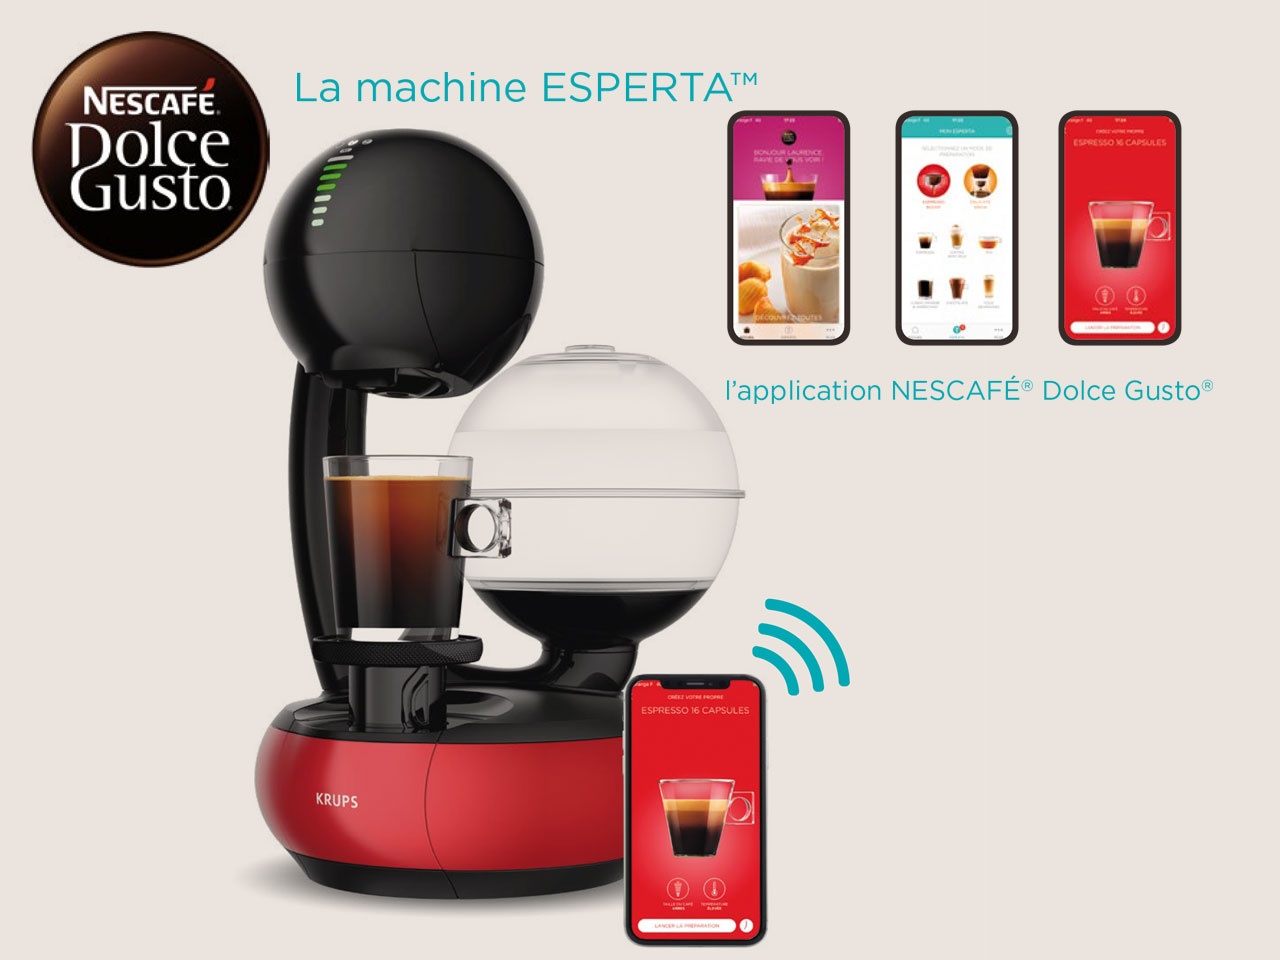 ESPERTA, la nouvelle machine Nescafé Dolce Gusto - Univers Habitat